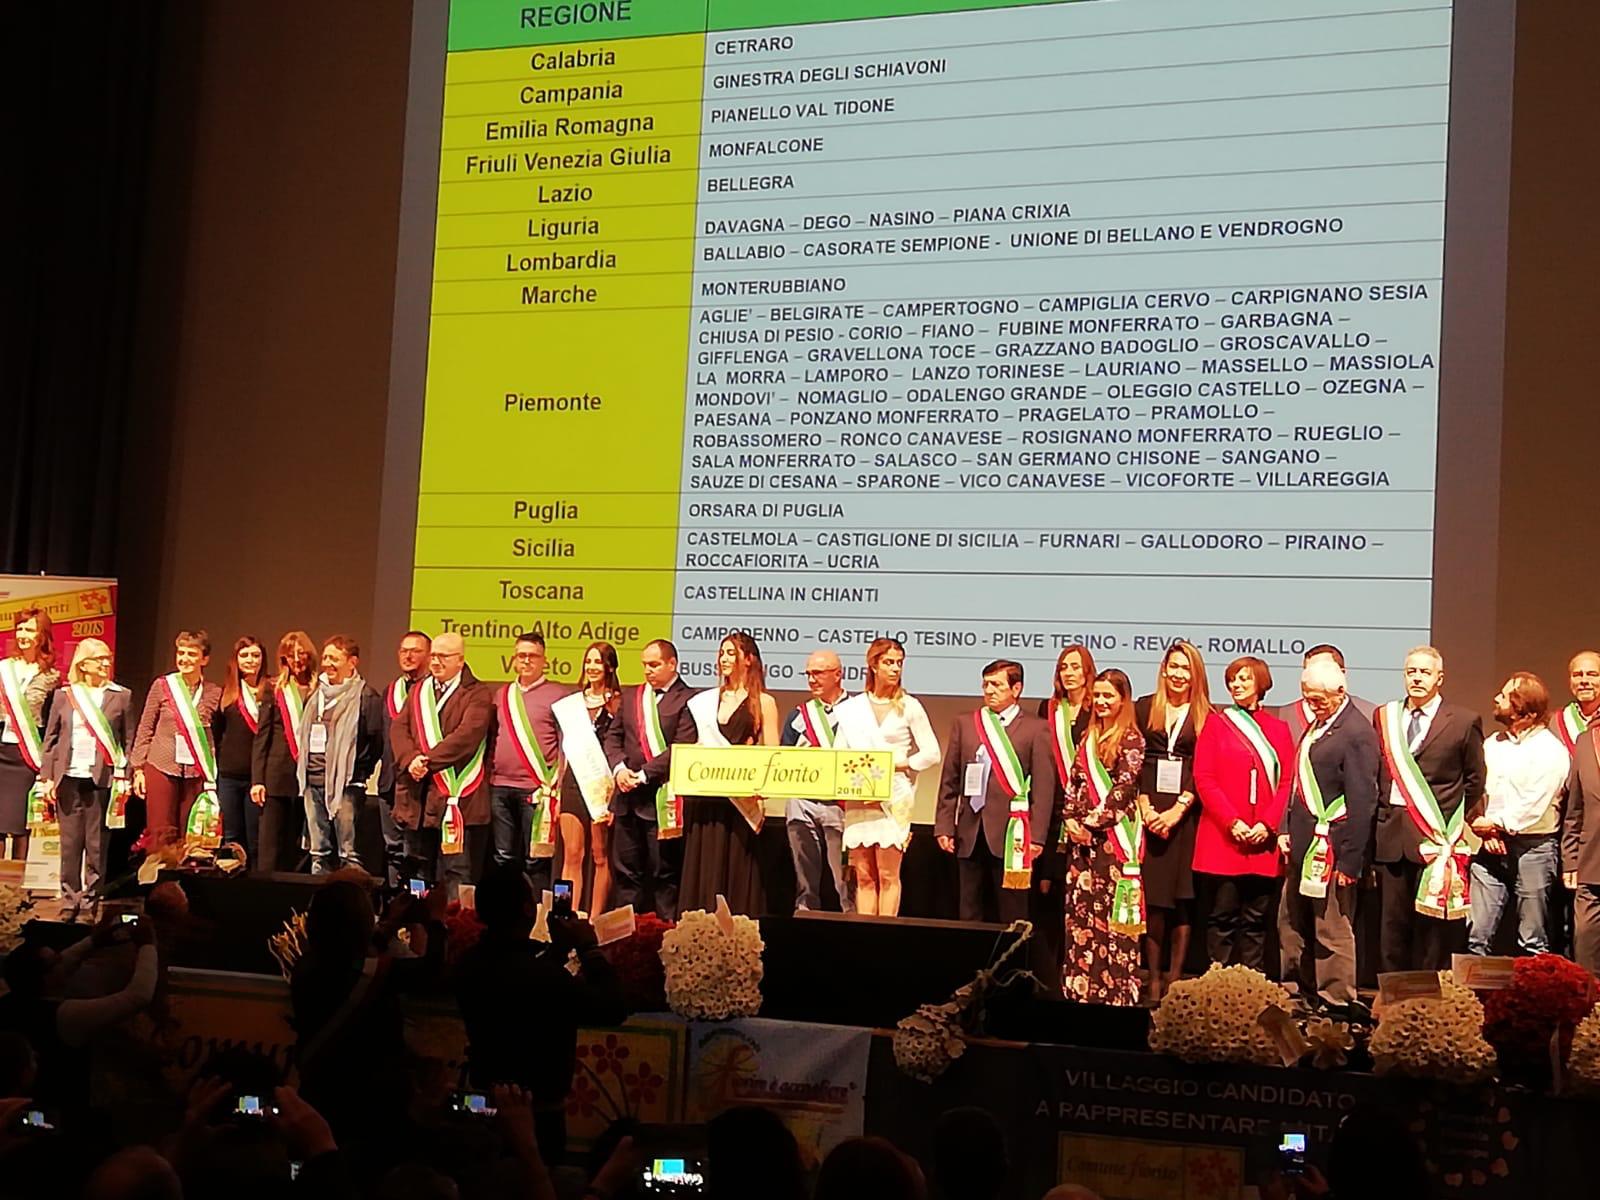 Ginestra degli Schiavoni premiata all’edizione 2018 del Concorso Nazionale Comuni Fioriti.